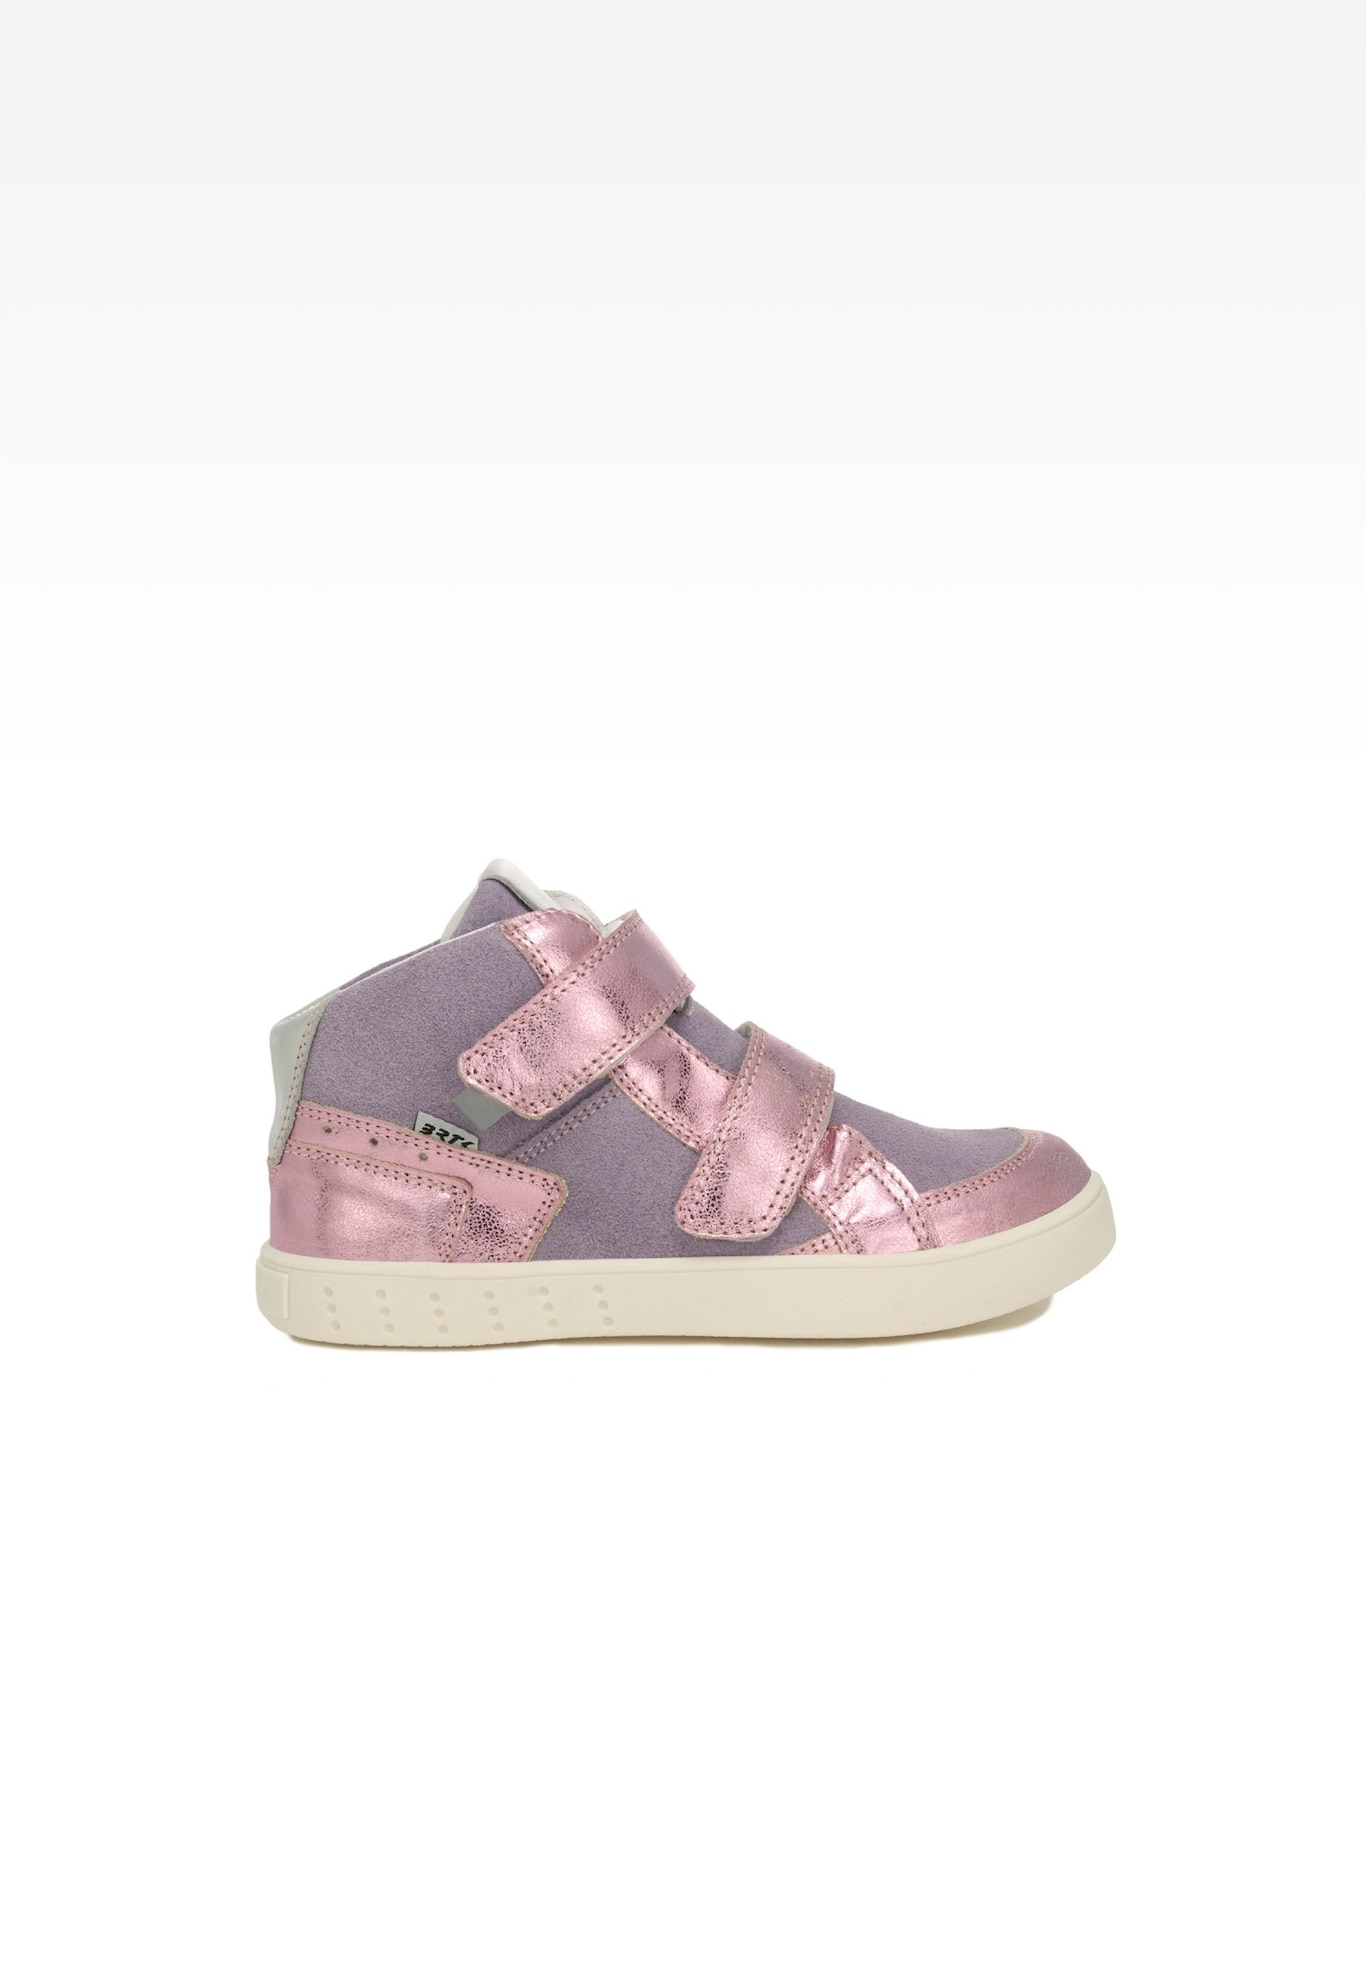 Sneakers BARTEK 27414-038, dla dziewcząt, fioletowo-różowy